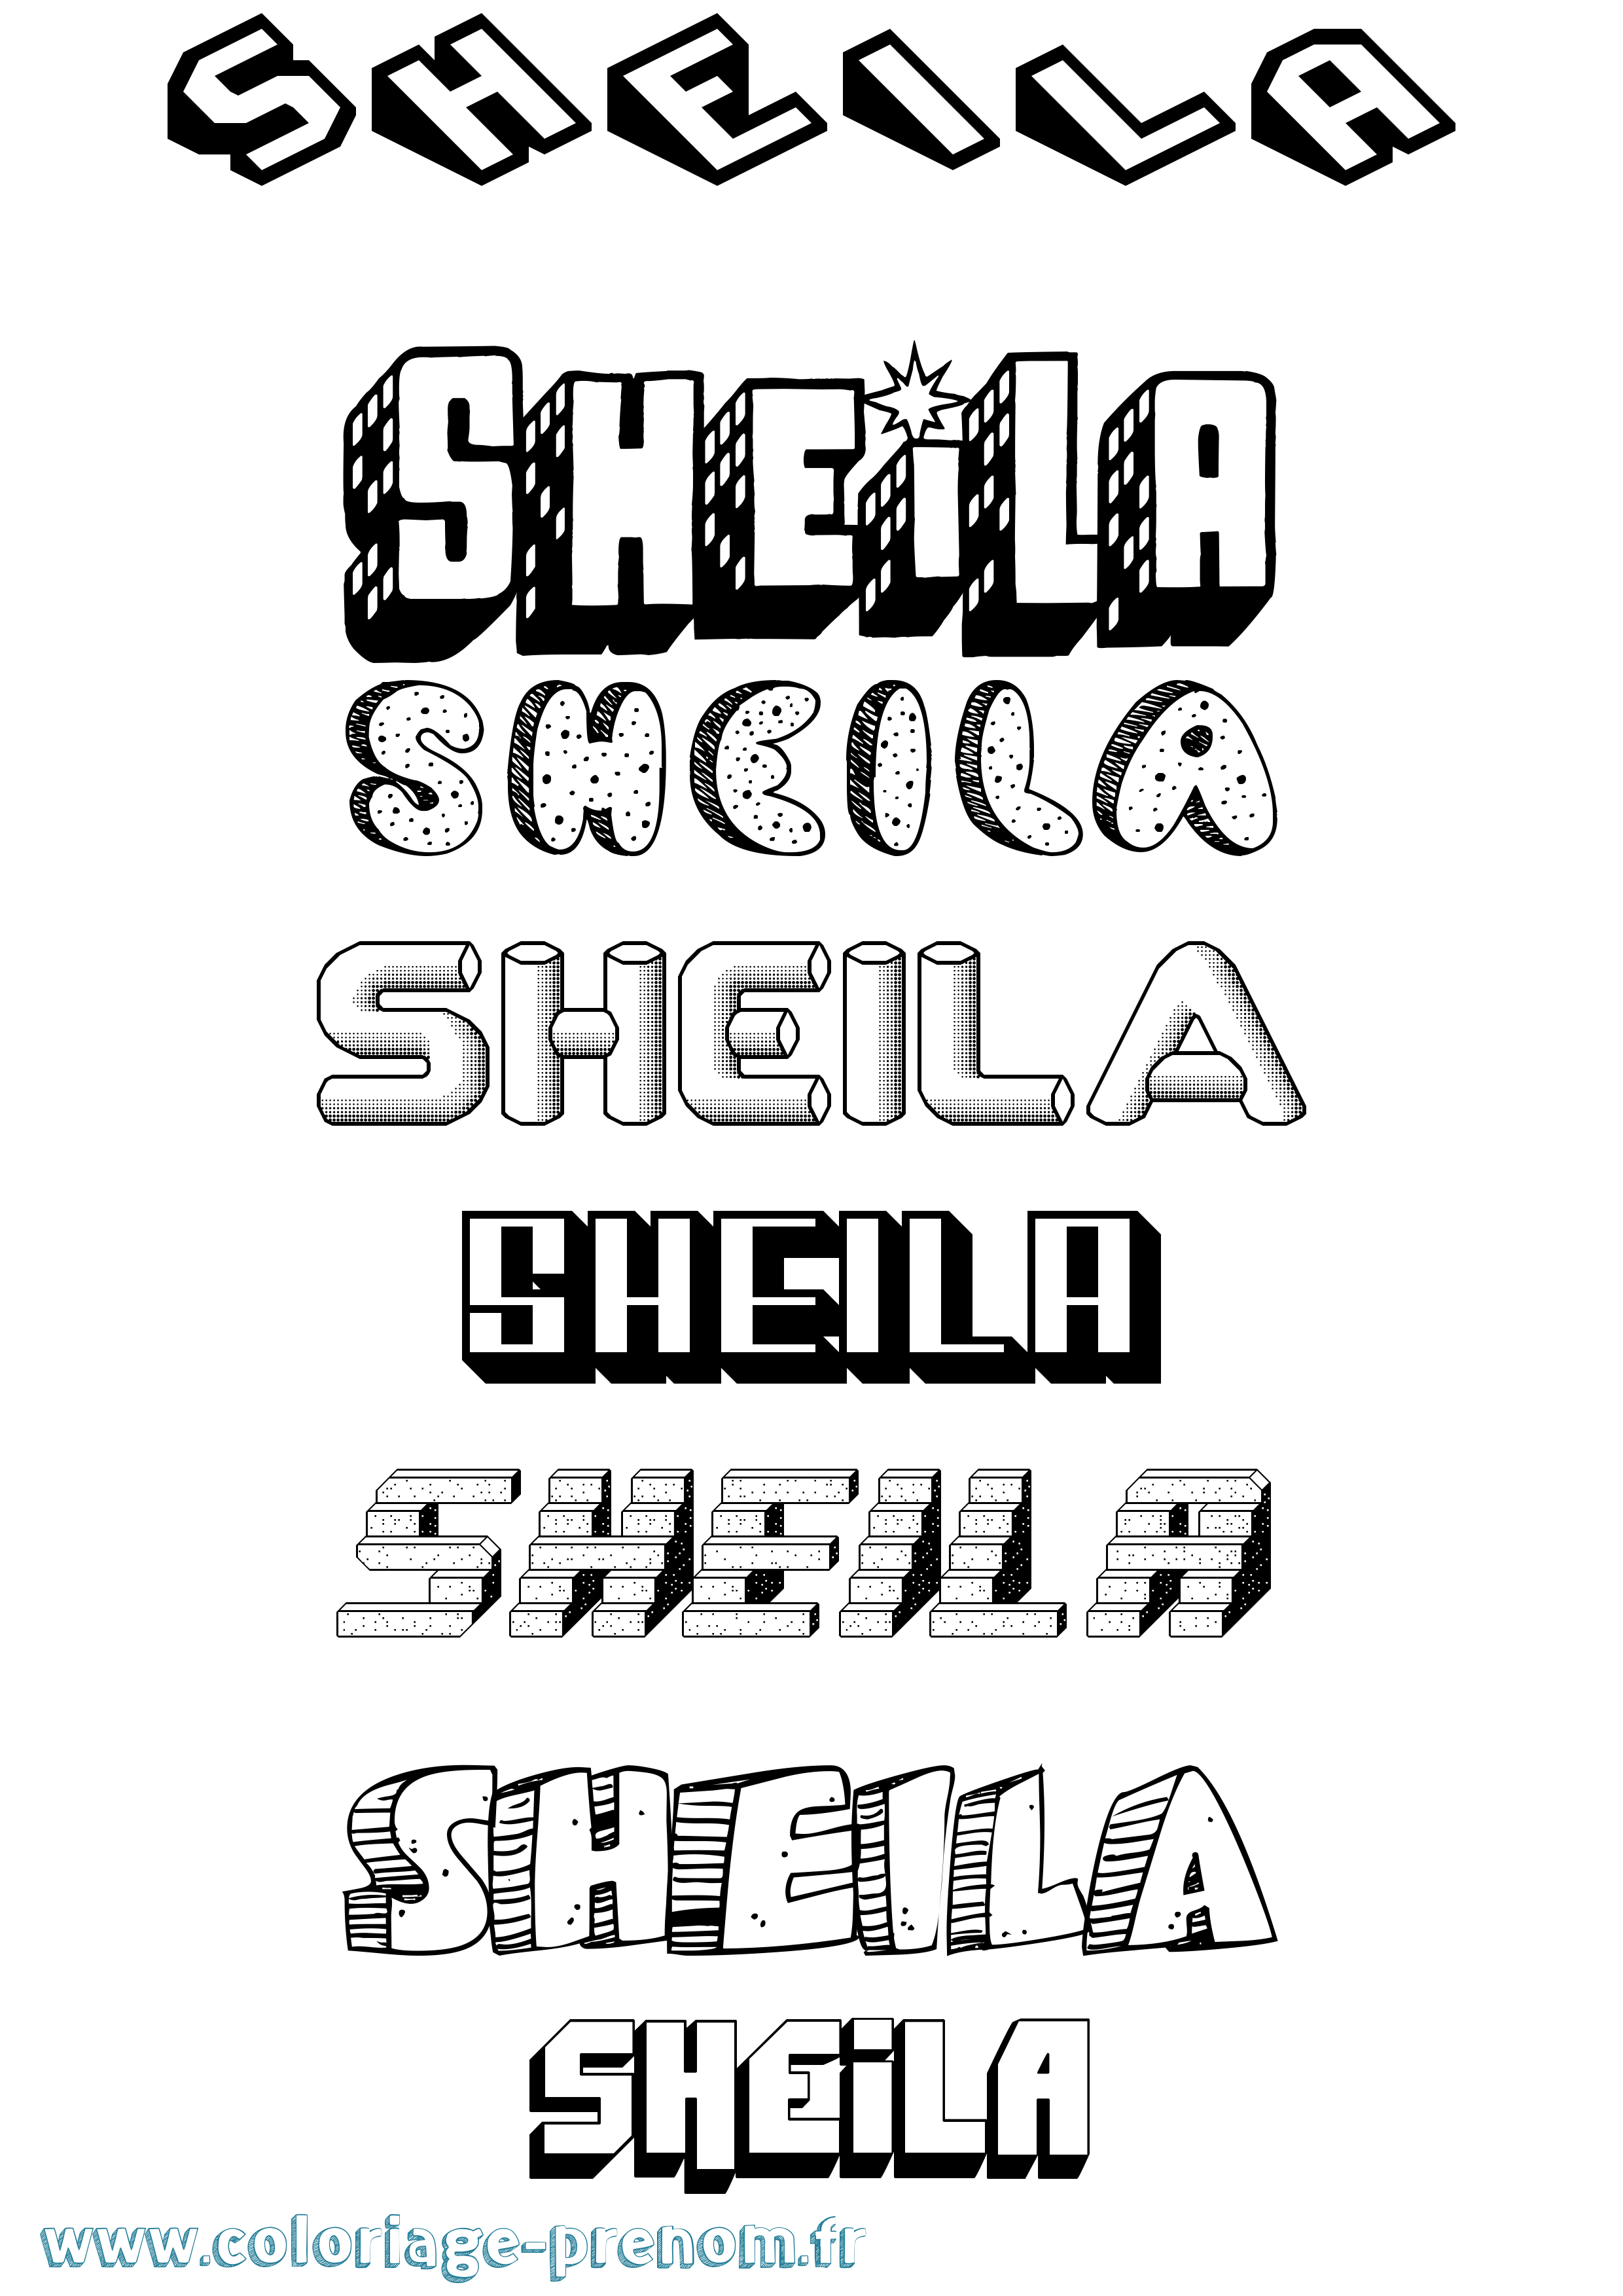 Coloriage prénom Sheila Effet 3D